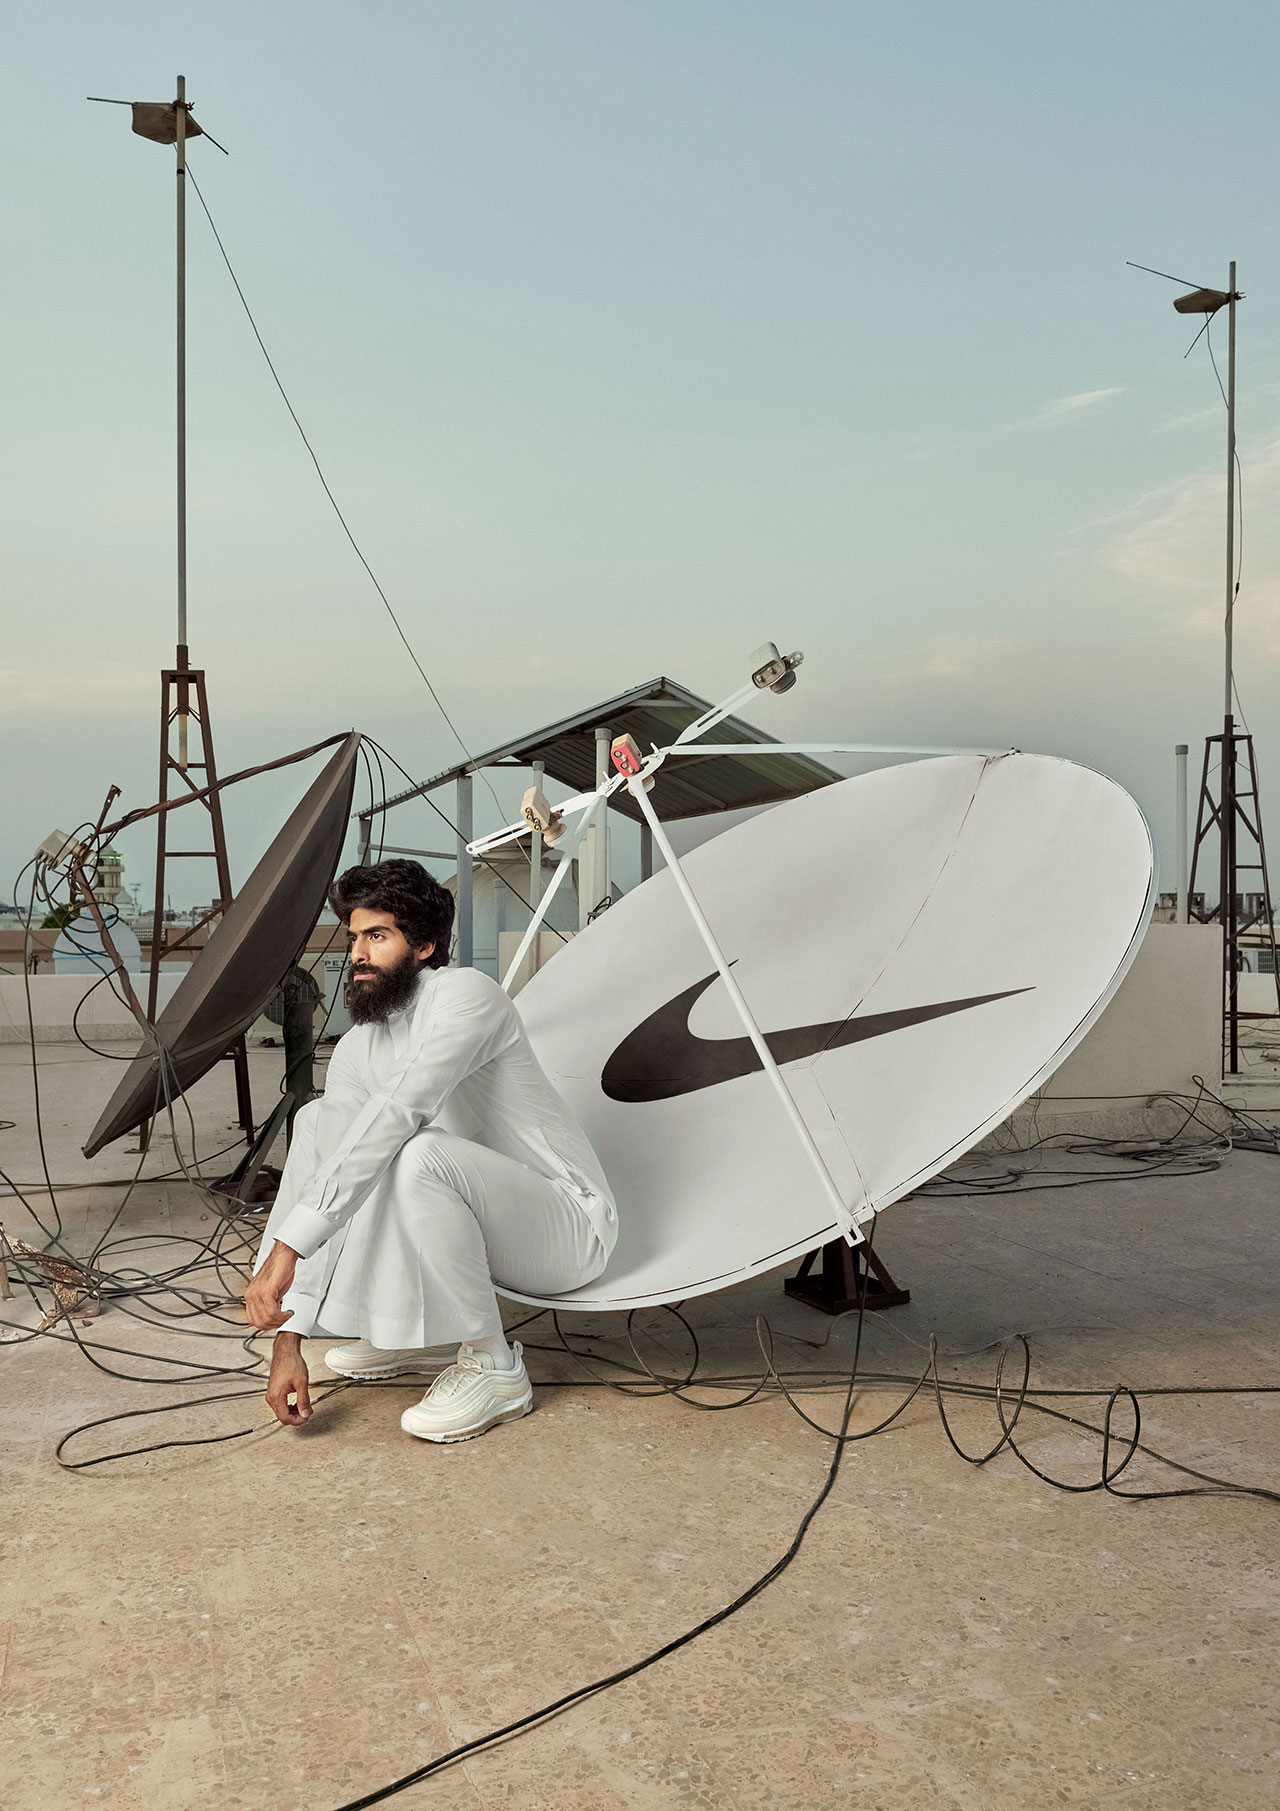 Ali Cha'aban 和 Rayan Nawawi，卫星文化，Nike x Vice 杂志以 Airmax97 模型为特色。 由 Ali Cha'aban 提供。